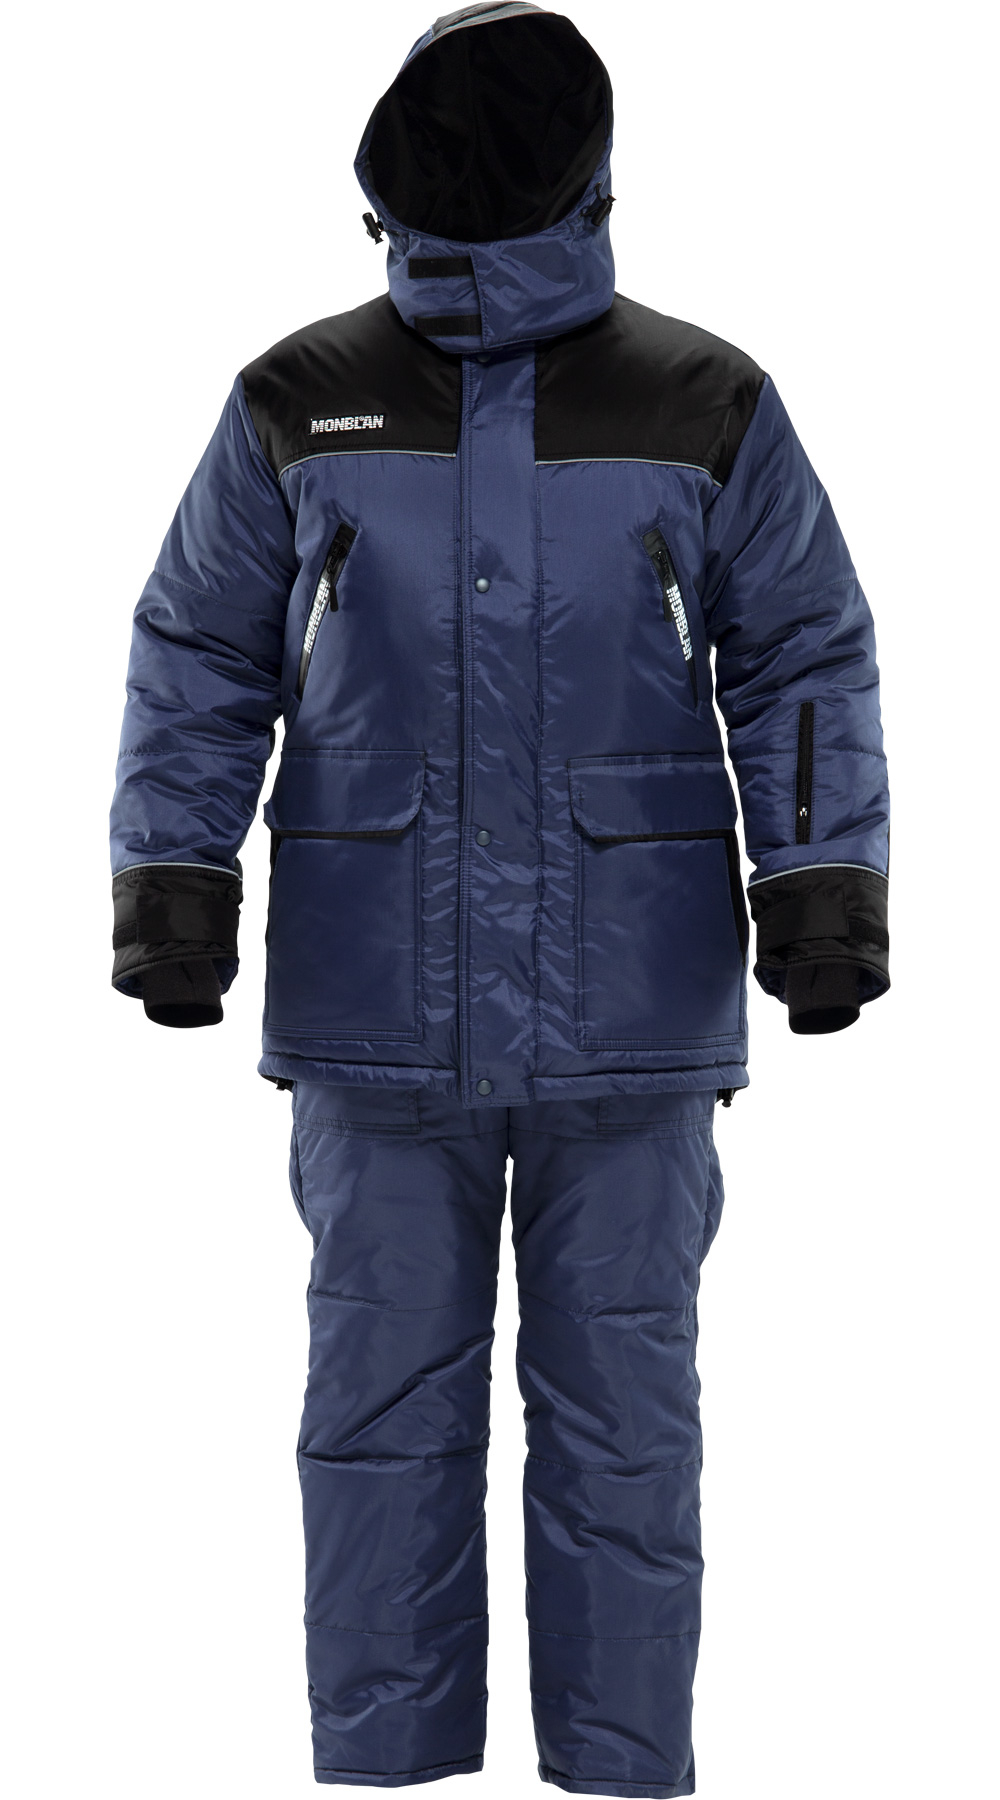 Зимний костюм "МОНБЛАН" мужской, утепленный (куртка и полукомбинезон), цвет: темно-синий с черным, ткань: 100% ПЭ